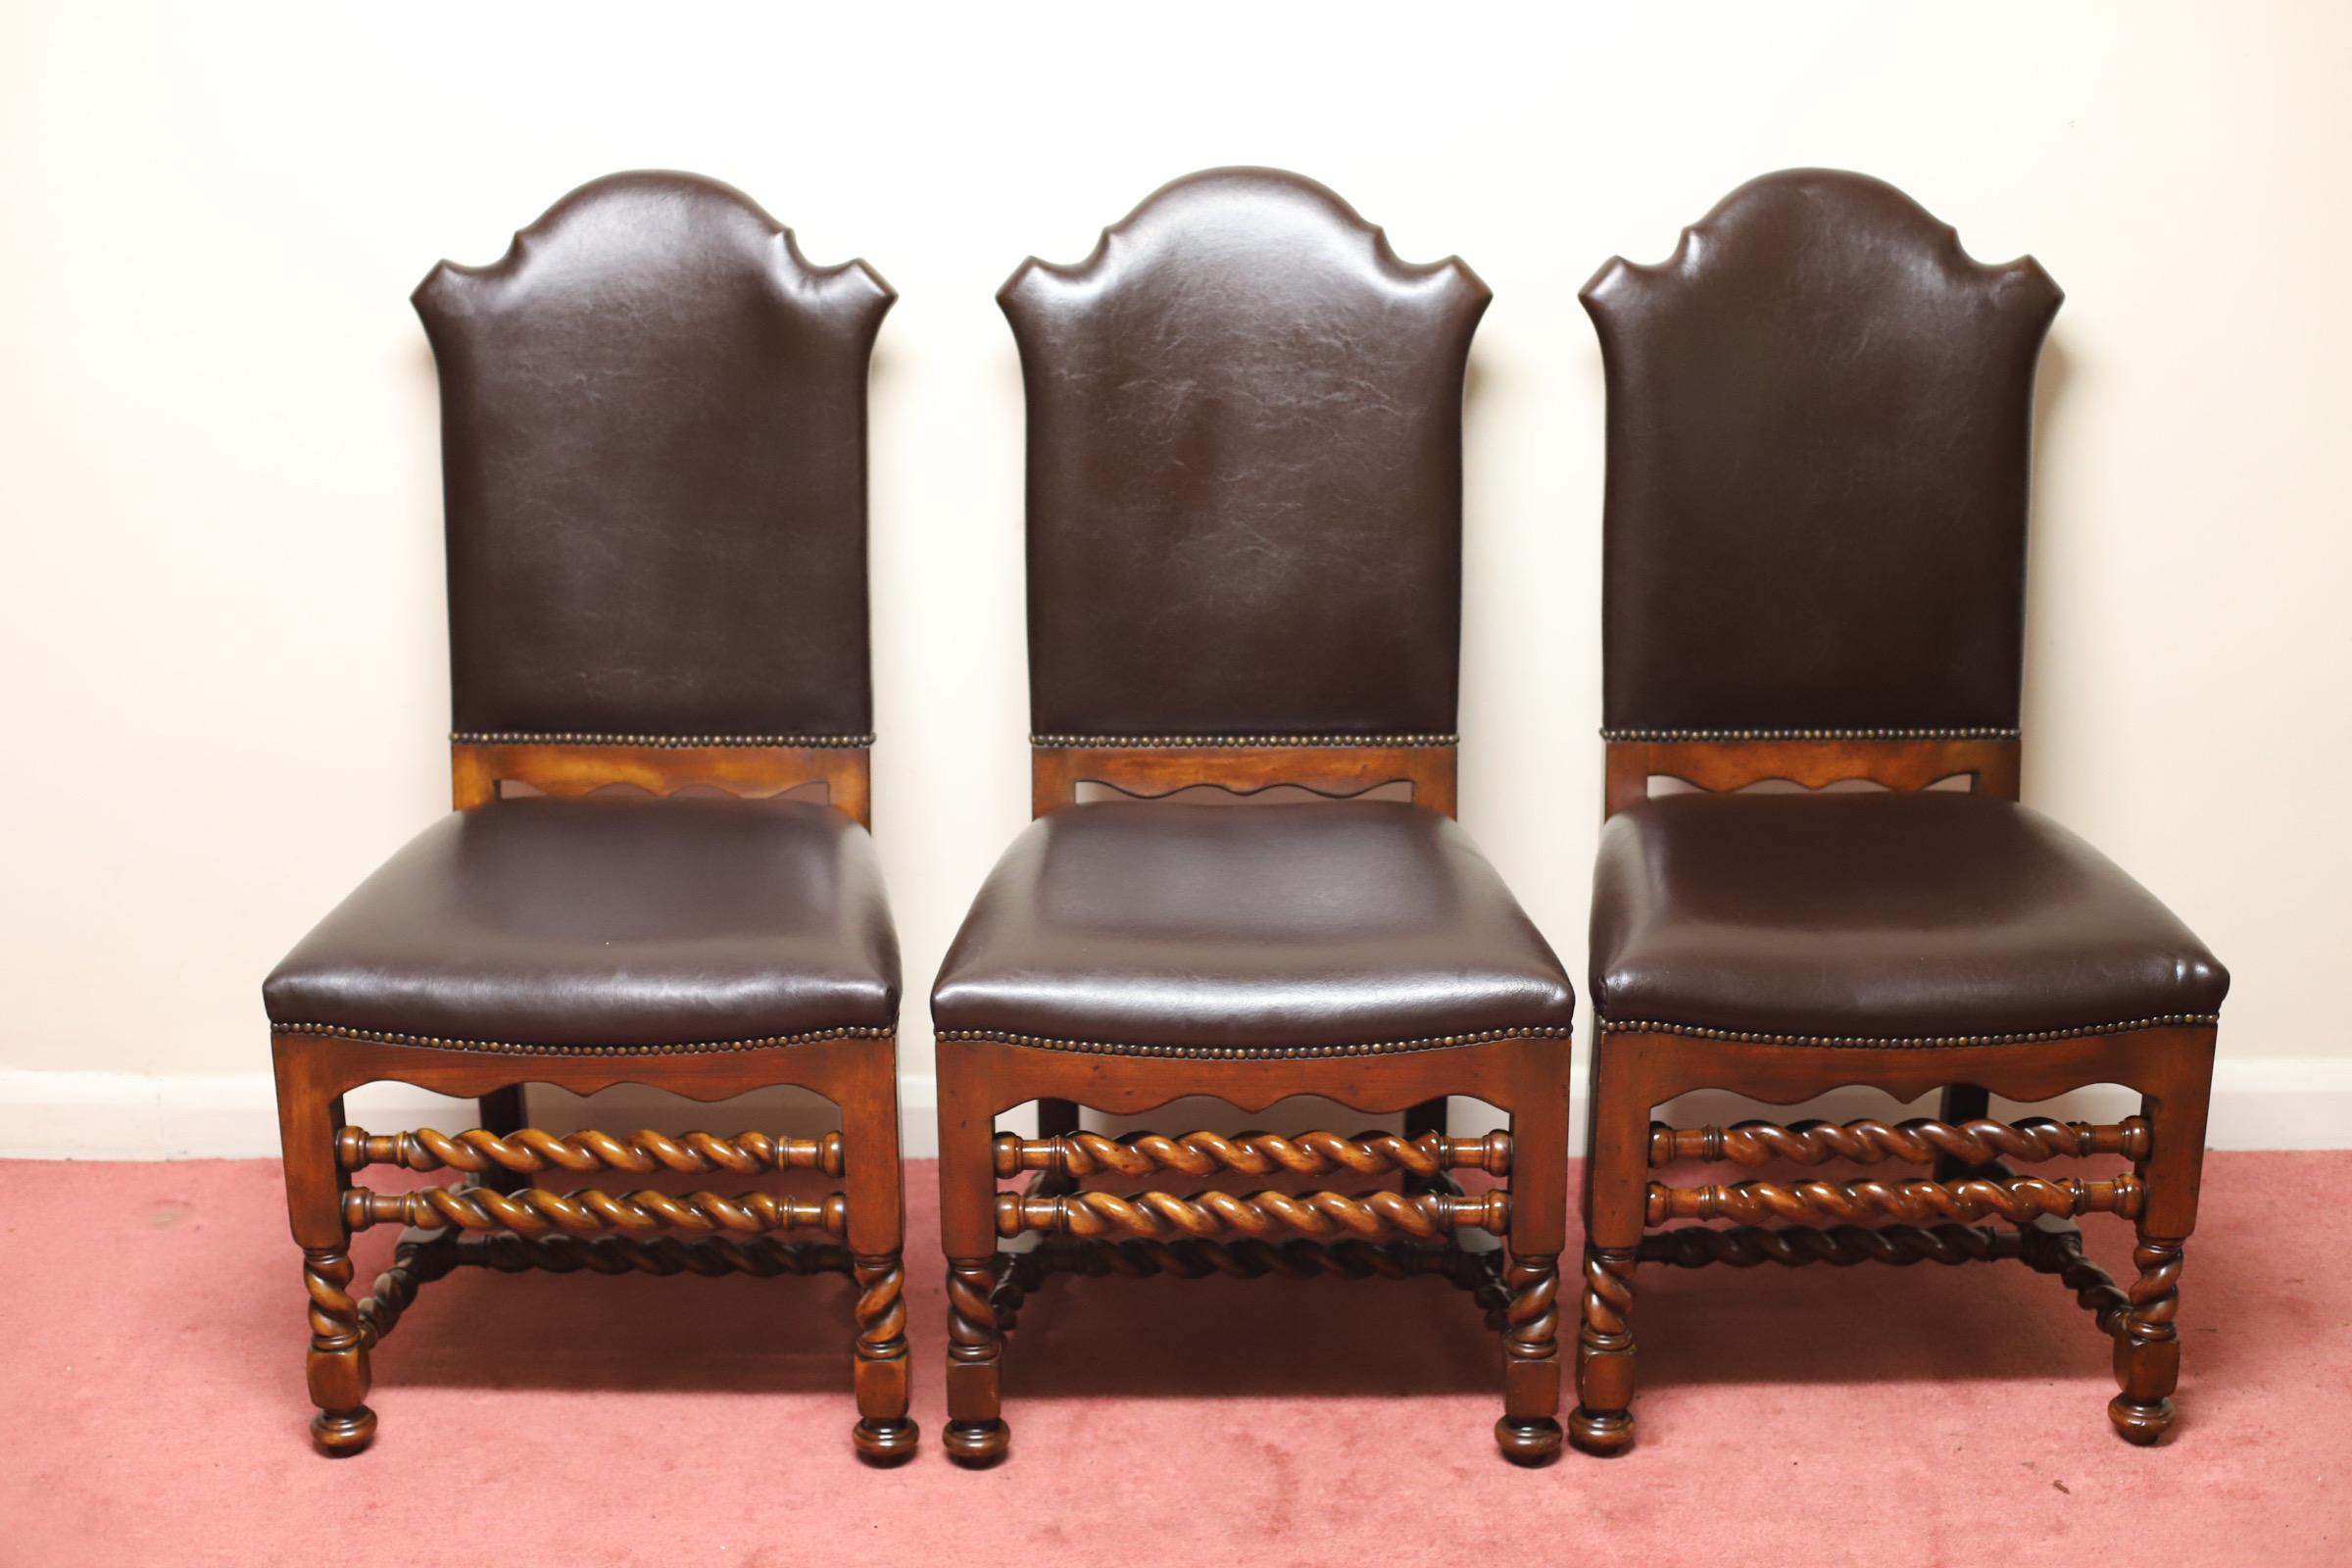 Schöner Satz von 6 modernen, spiralförmig gedrehten Esszimmerstühlen aus Kastanienholz von Theodore Alexander.
Die Sitze und Rückenlehnen sind mit weichem braunem Leder gepolstert - mit feuerhemmenden Sicherheitsetiketten, die unter der weichen